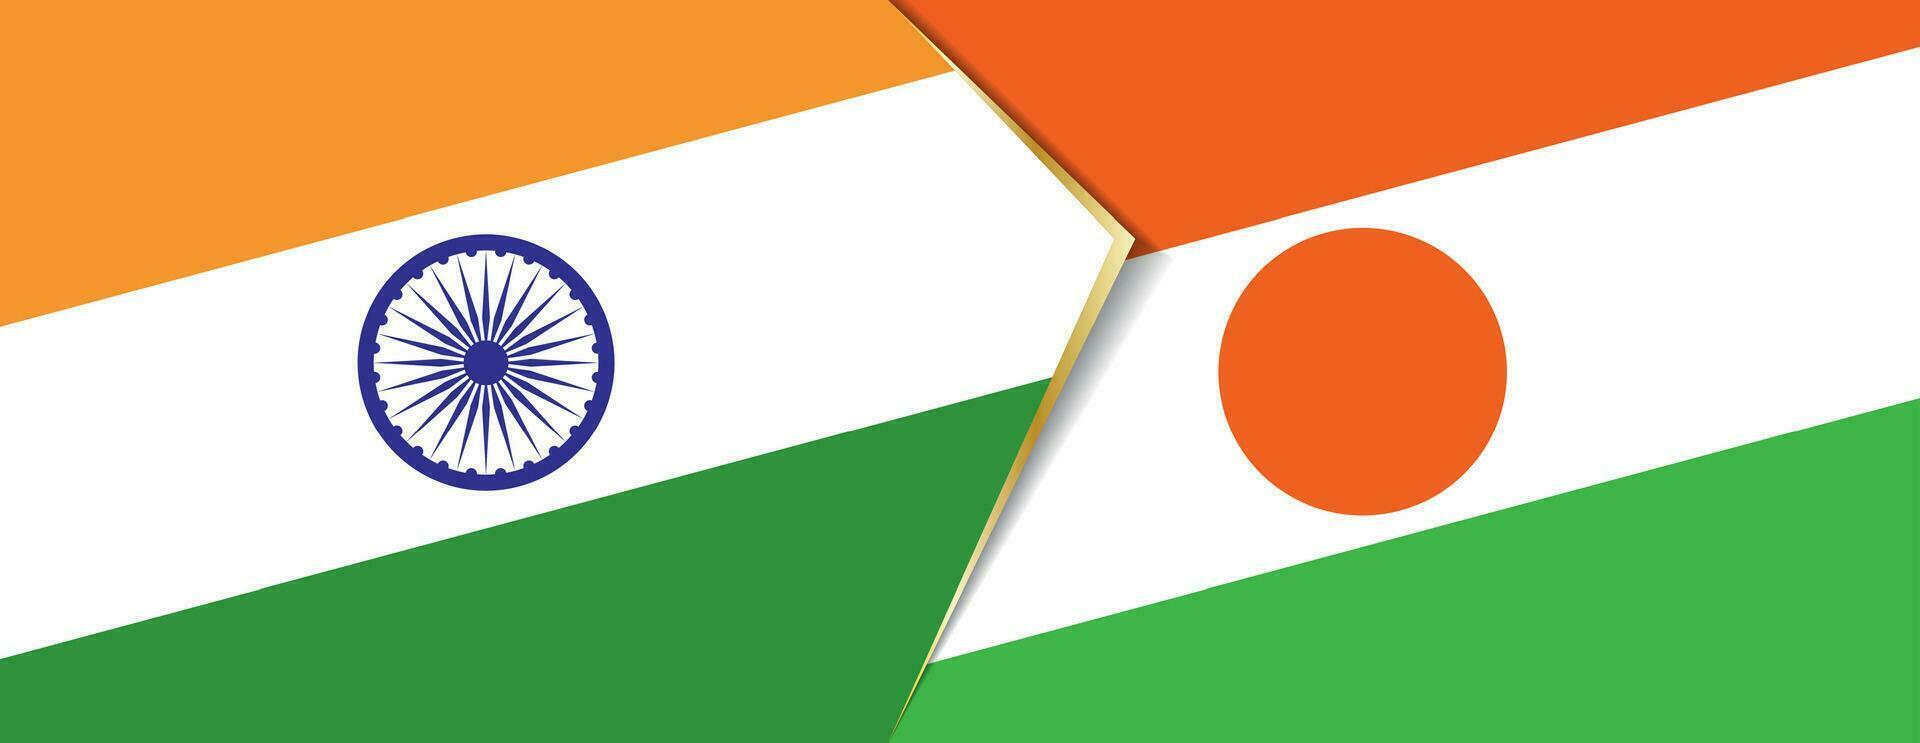 Índia e Níger bandeiras, dois vetor bandeiras.